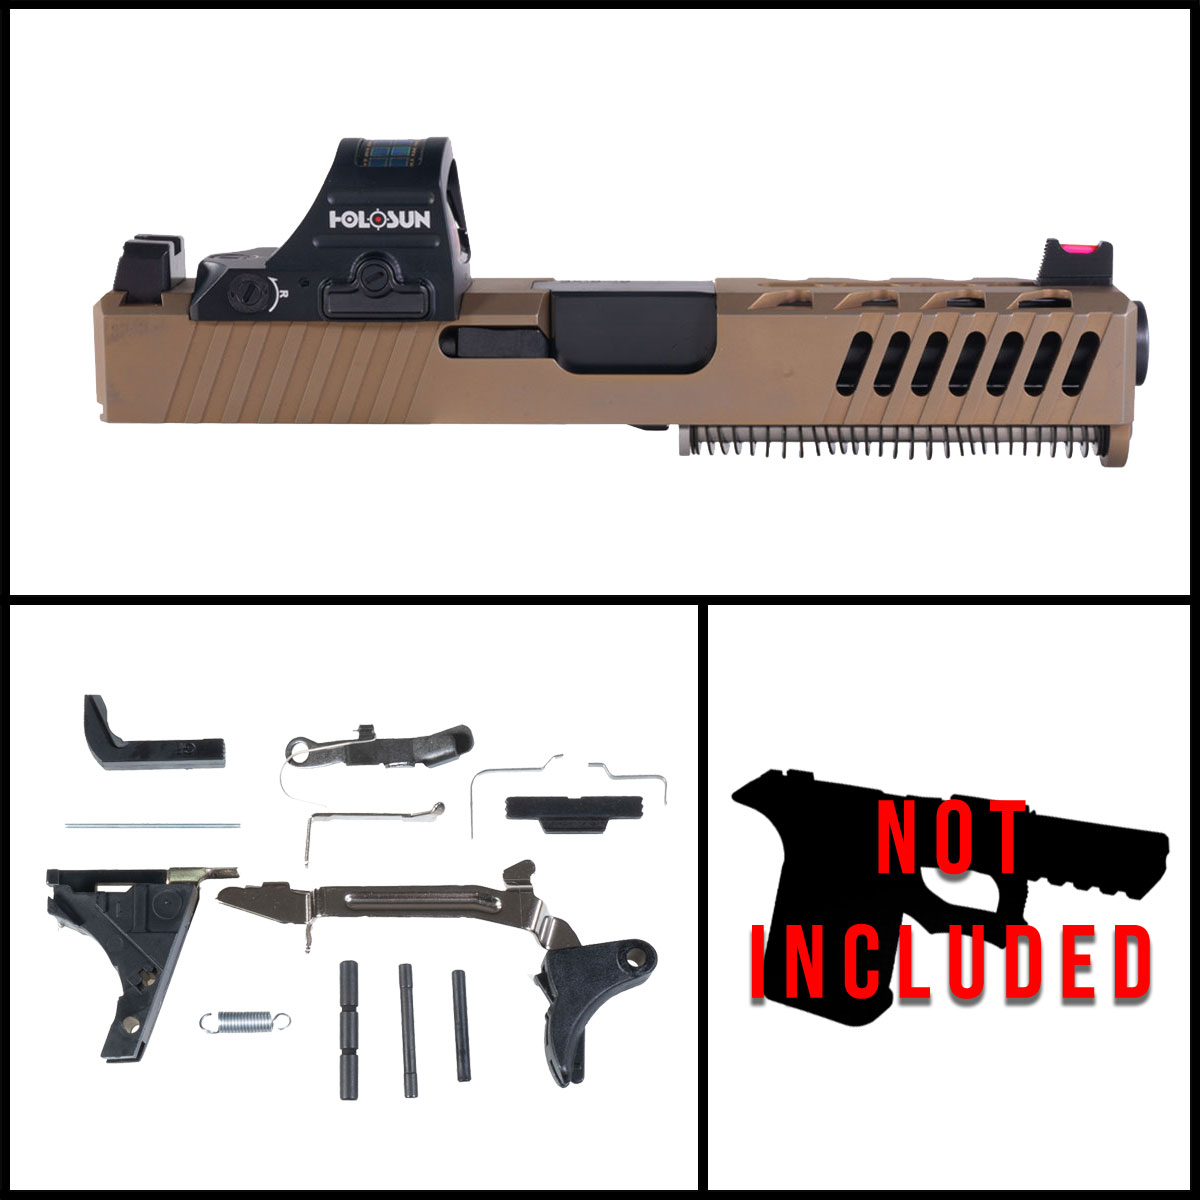 OTD 'Copperhead' 9mm Full Pistol Build Kit (Everything Minus Frame) - Glock 19 Compatible